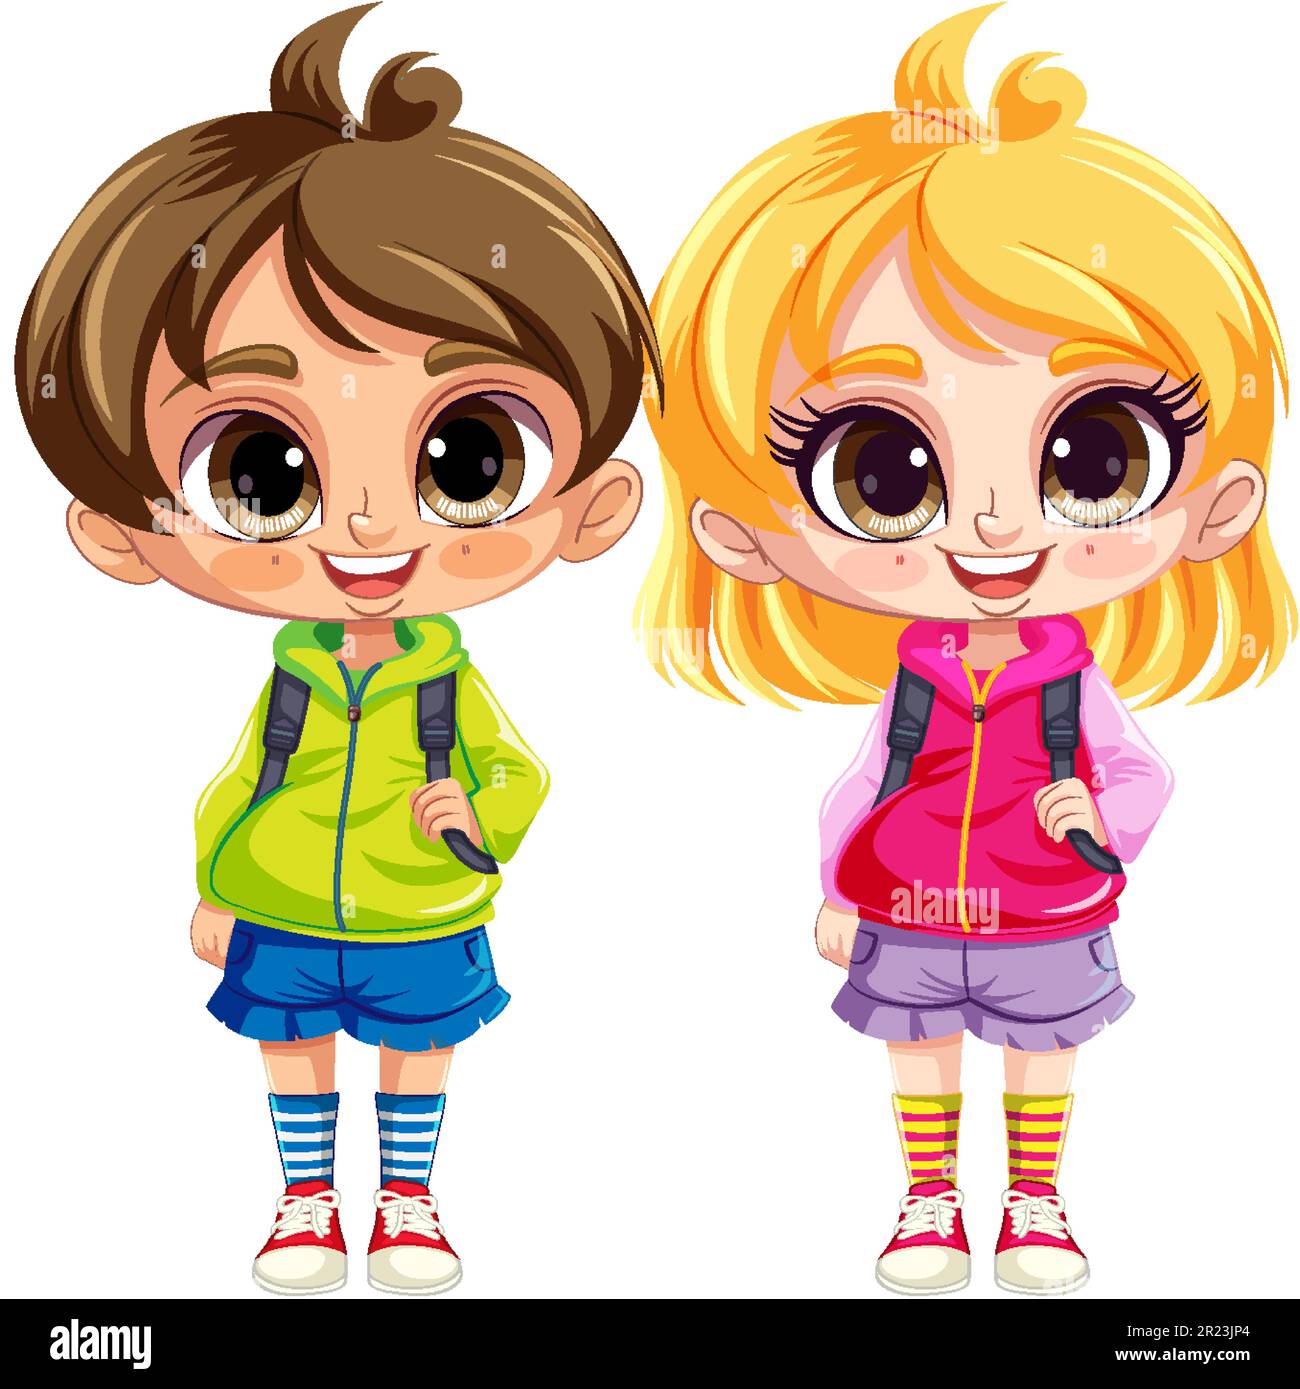 Illustration adorable de personnages de dessin animé pour couple enfant Illustration de Vecteur